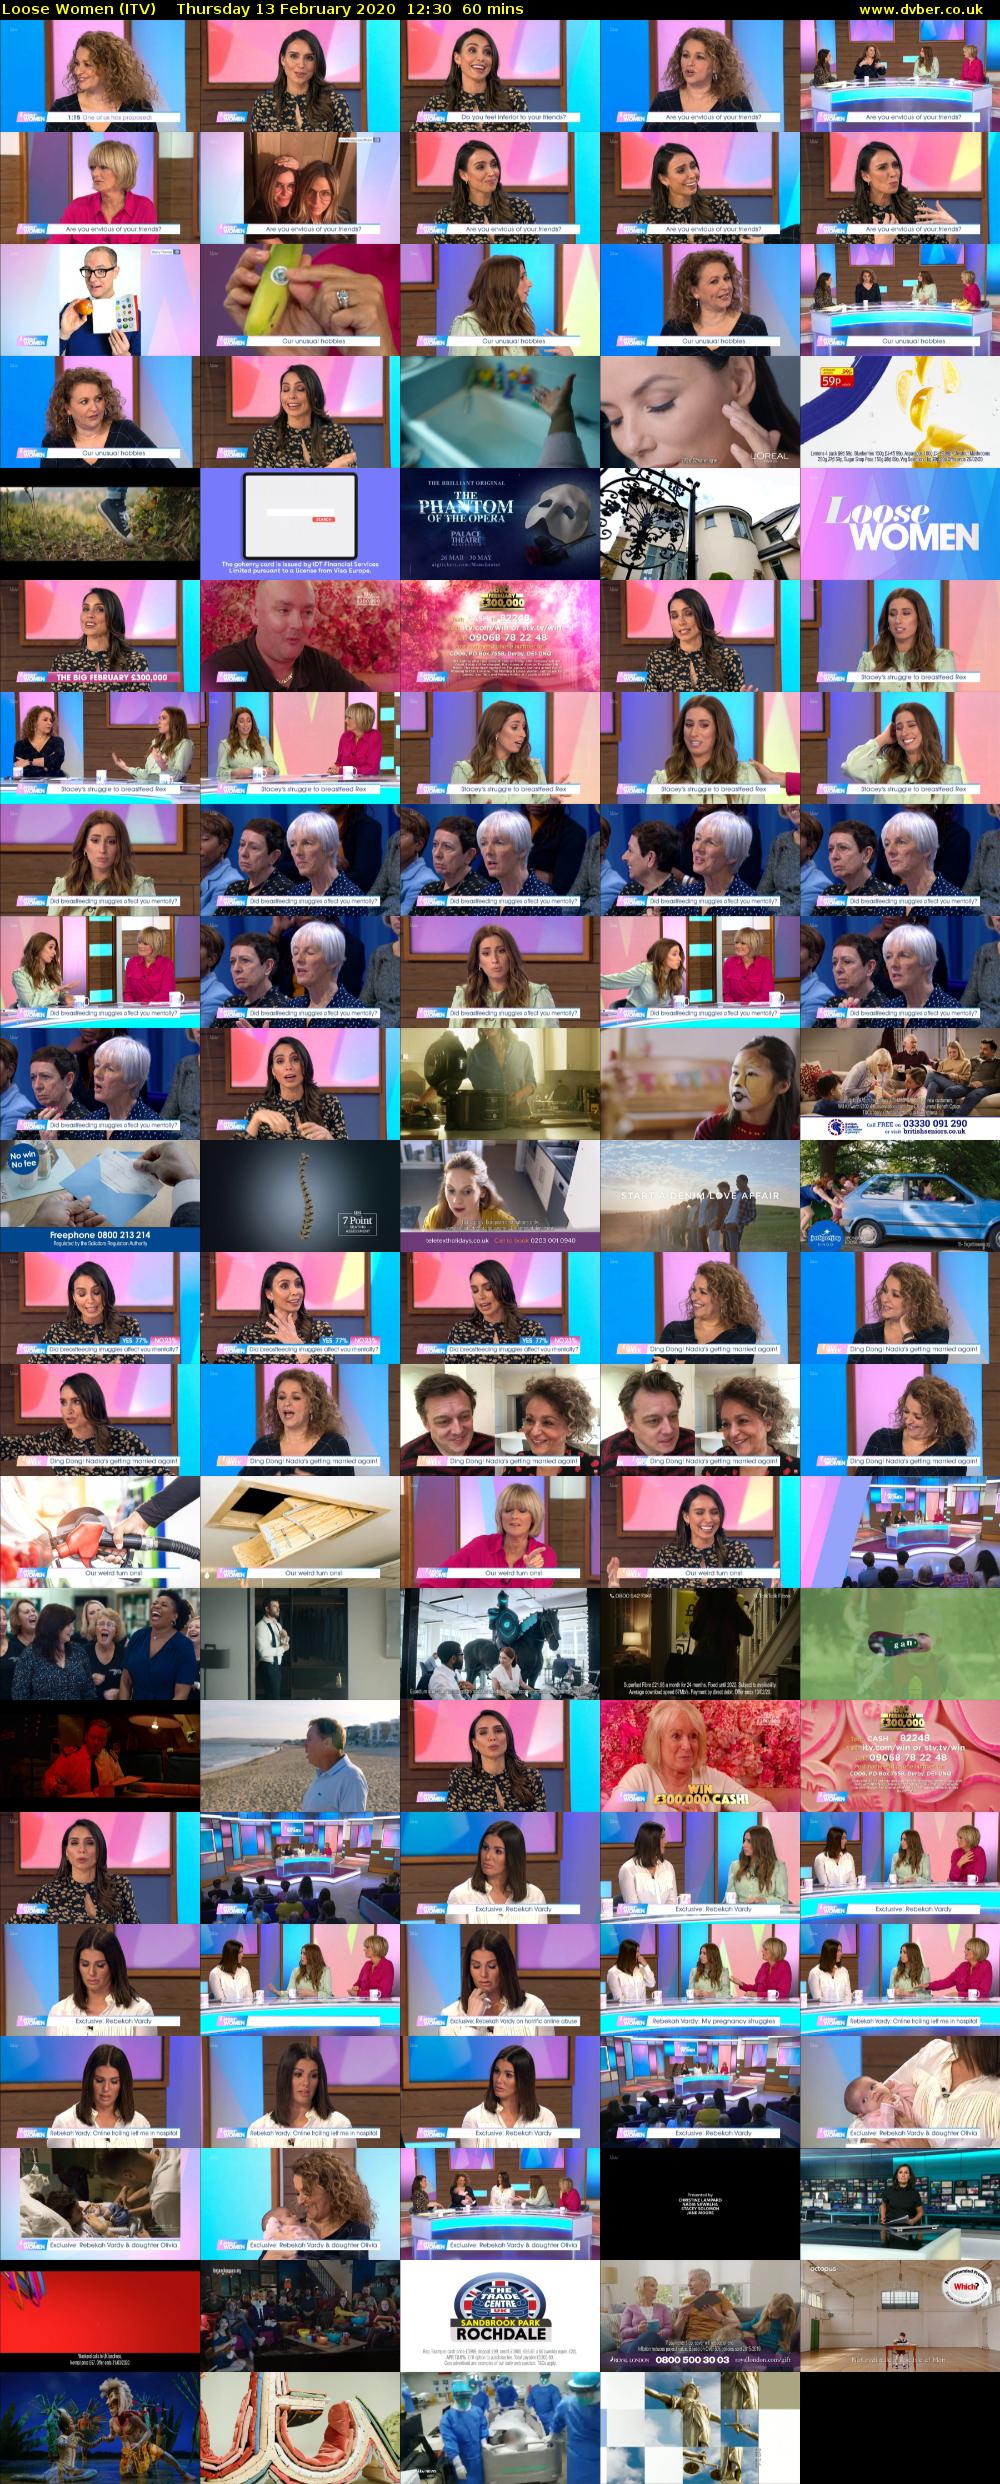 Loose Women (ITV) Thursday 13 February 2020 12:30 - 13:30